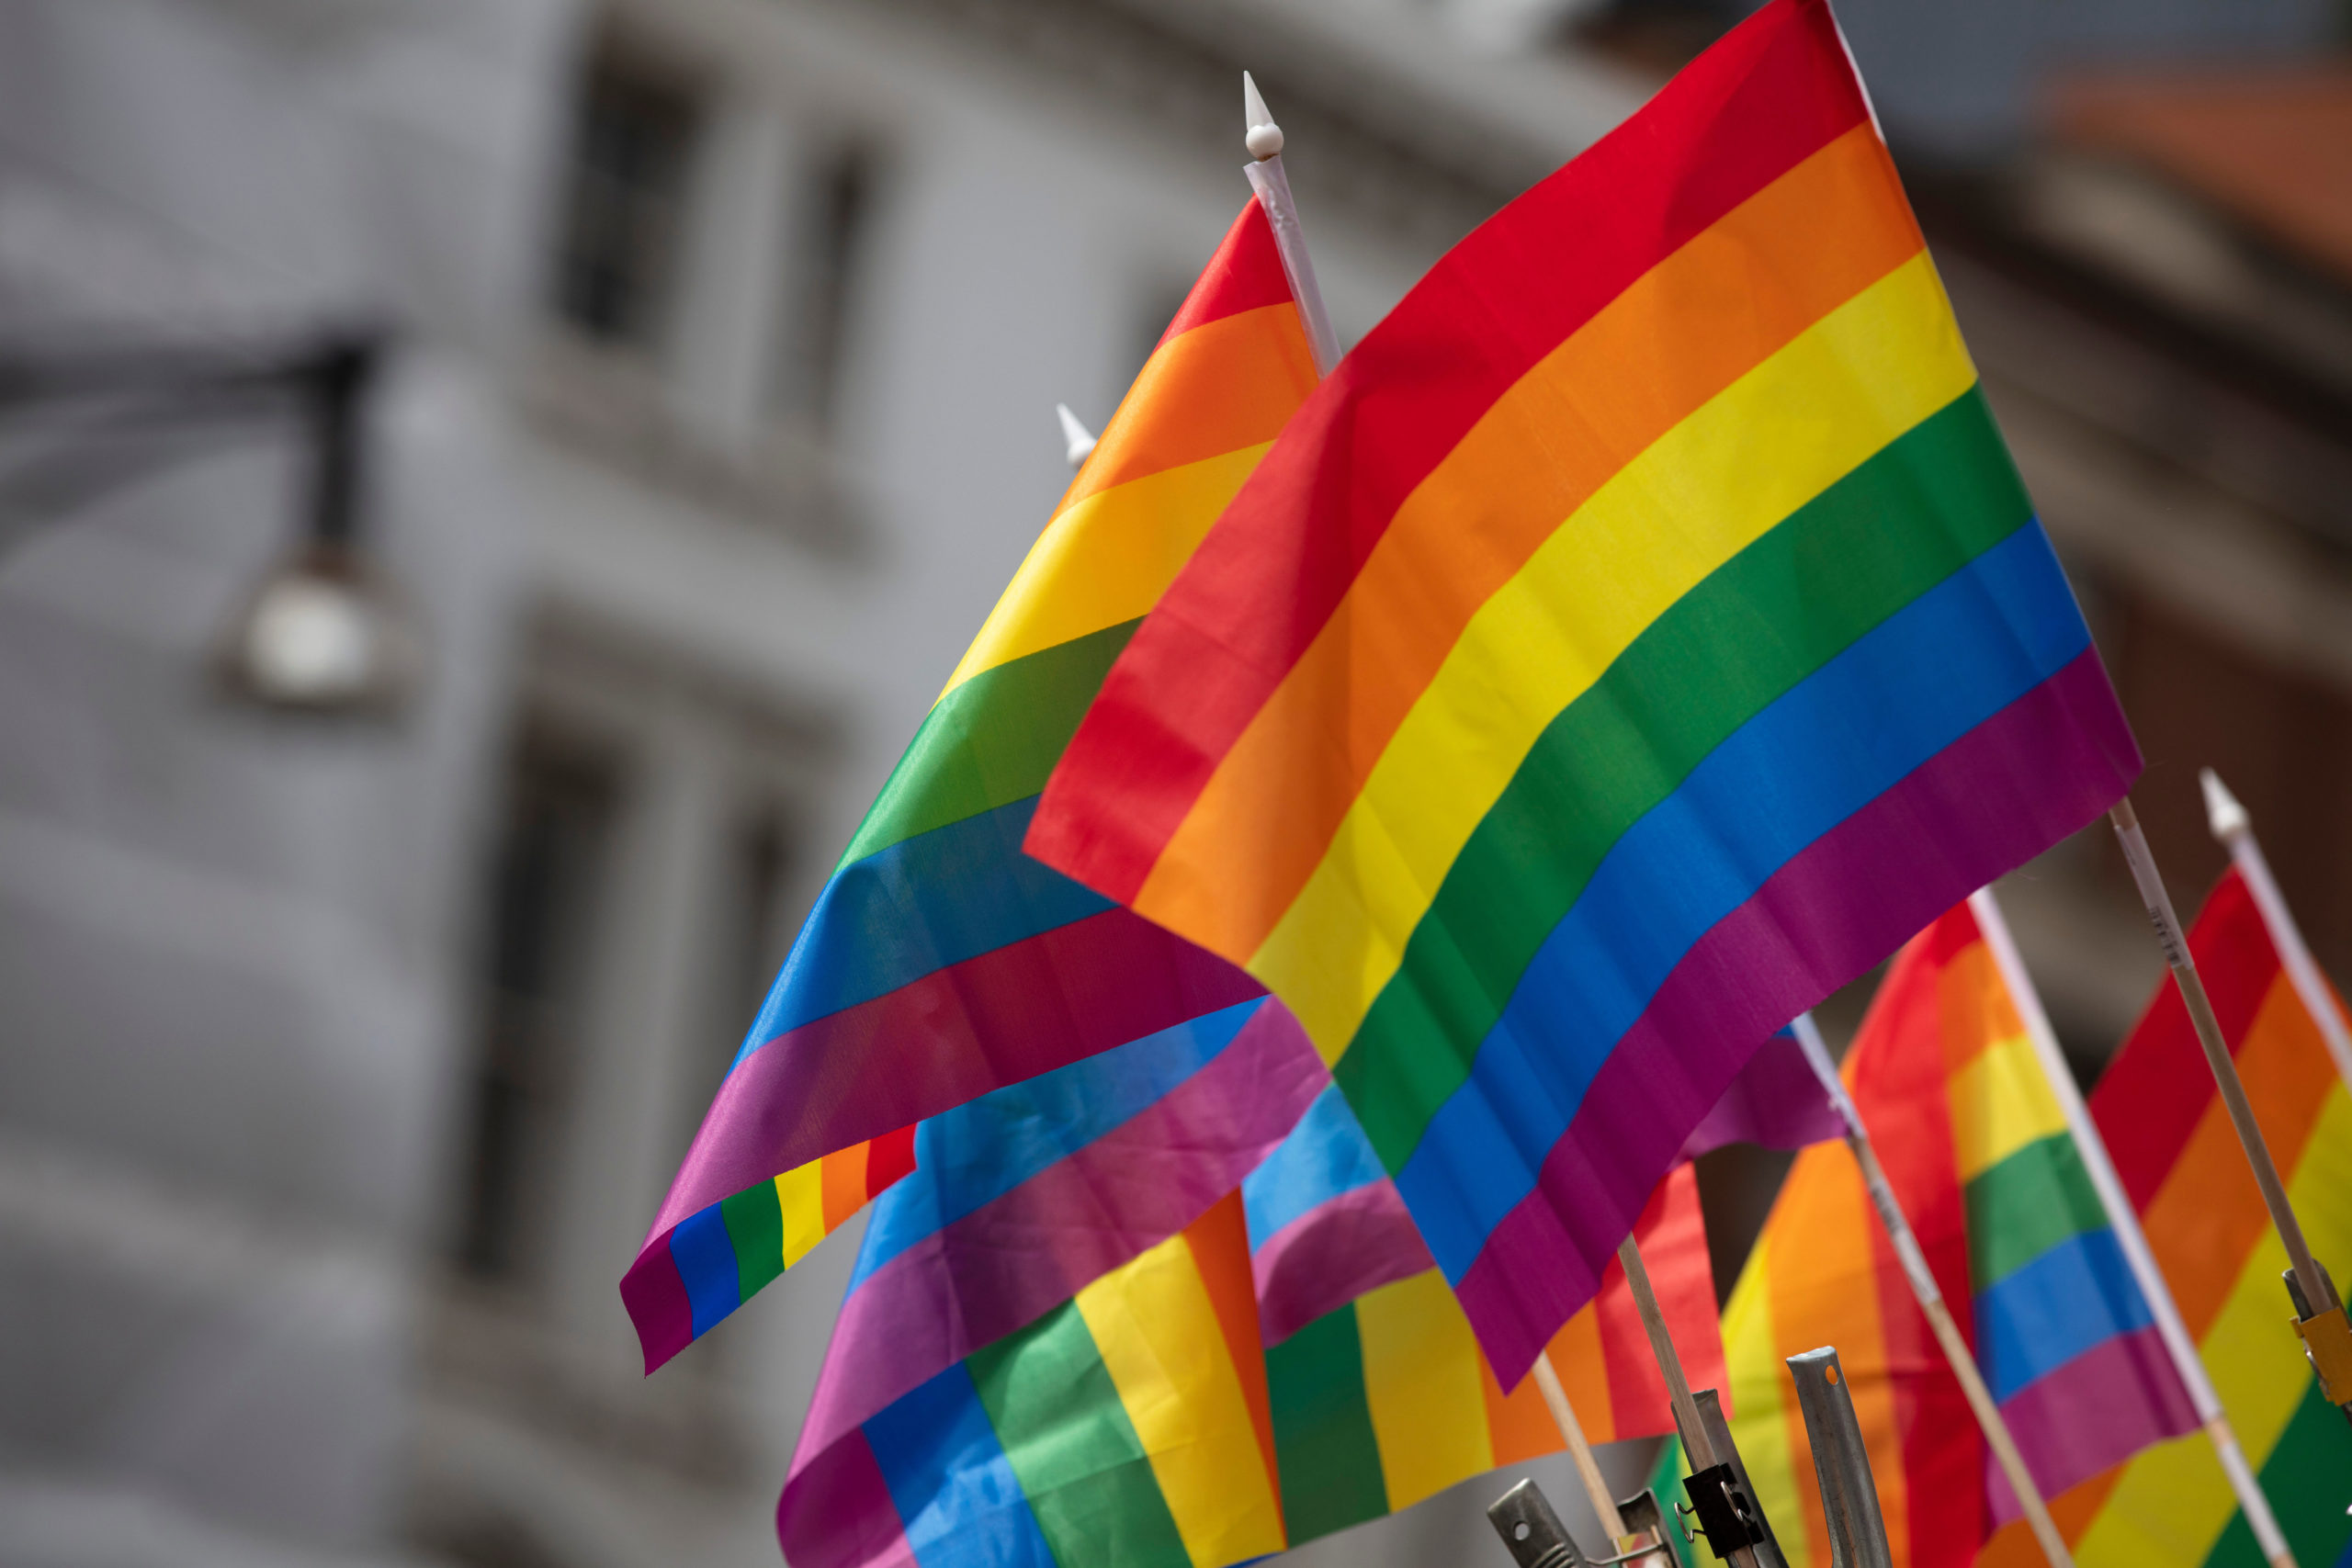 You are currently viewing Νέα έρευνα για τα δικαιώματα και τη συμμετοχή των ΛΟΑΤΚΙ+ ατόμων στην πολιτική